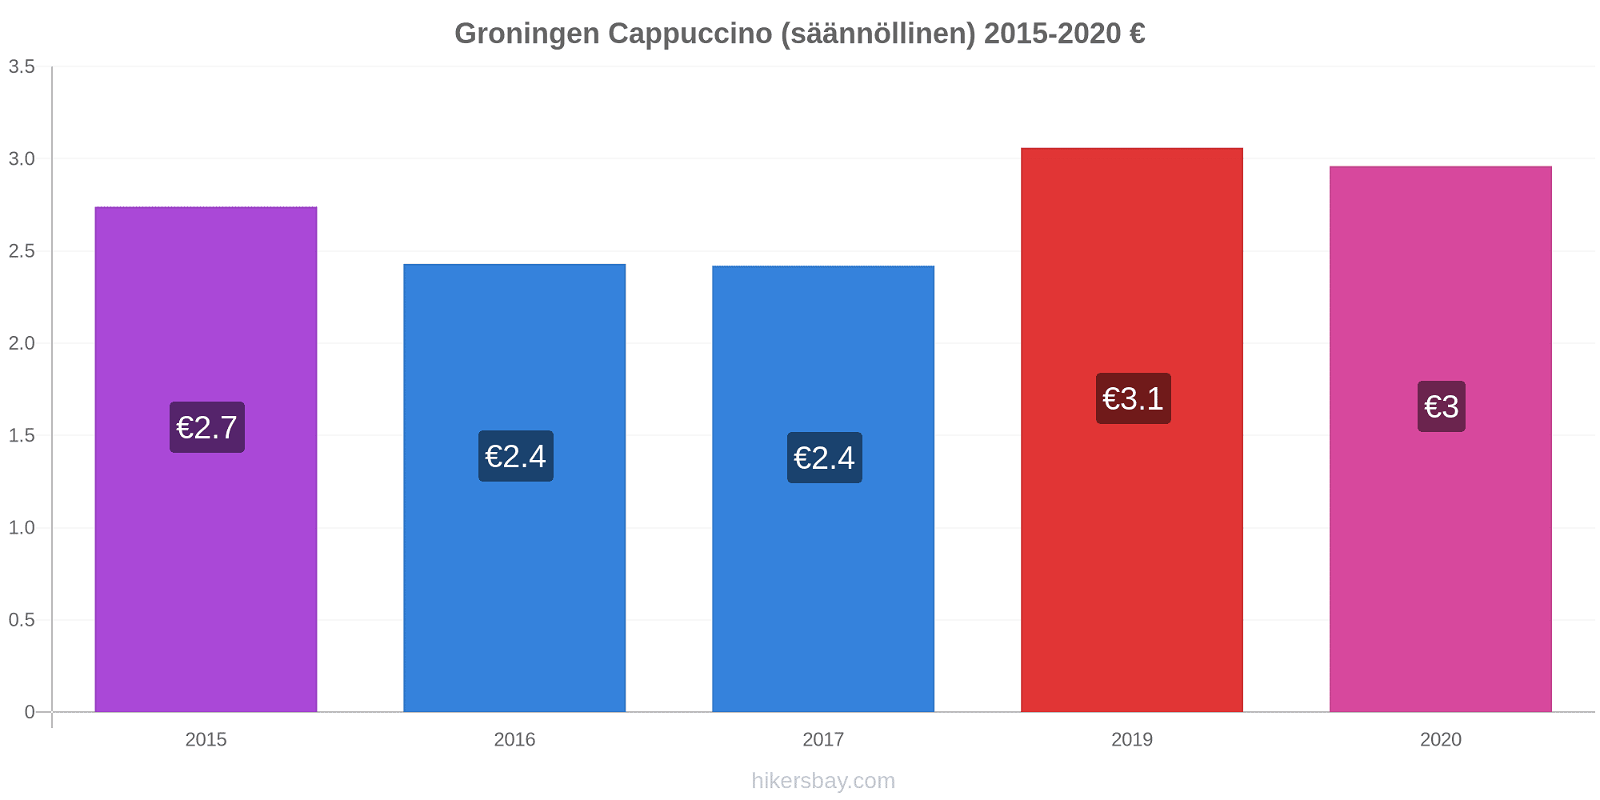 Groningen hintojen muutokset Cappuccino (säännöllinen) hikersbay.com